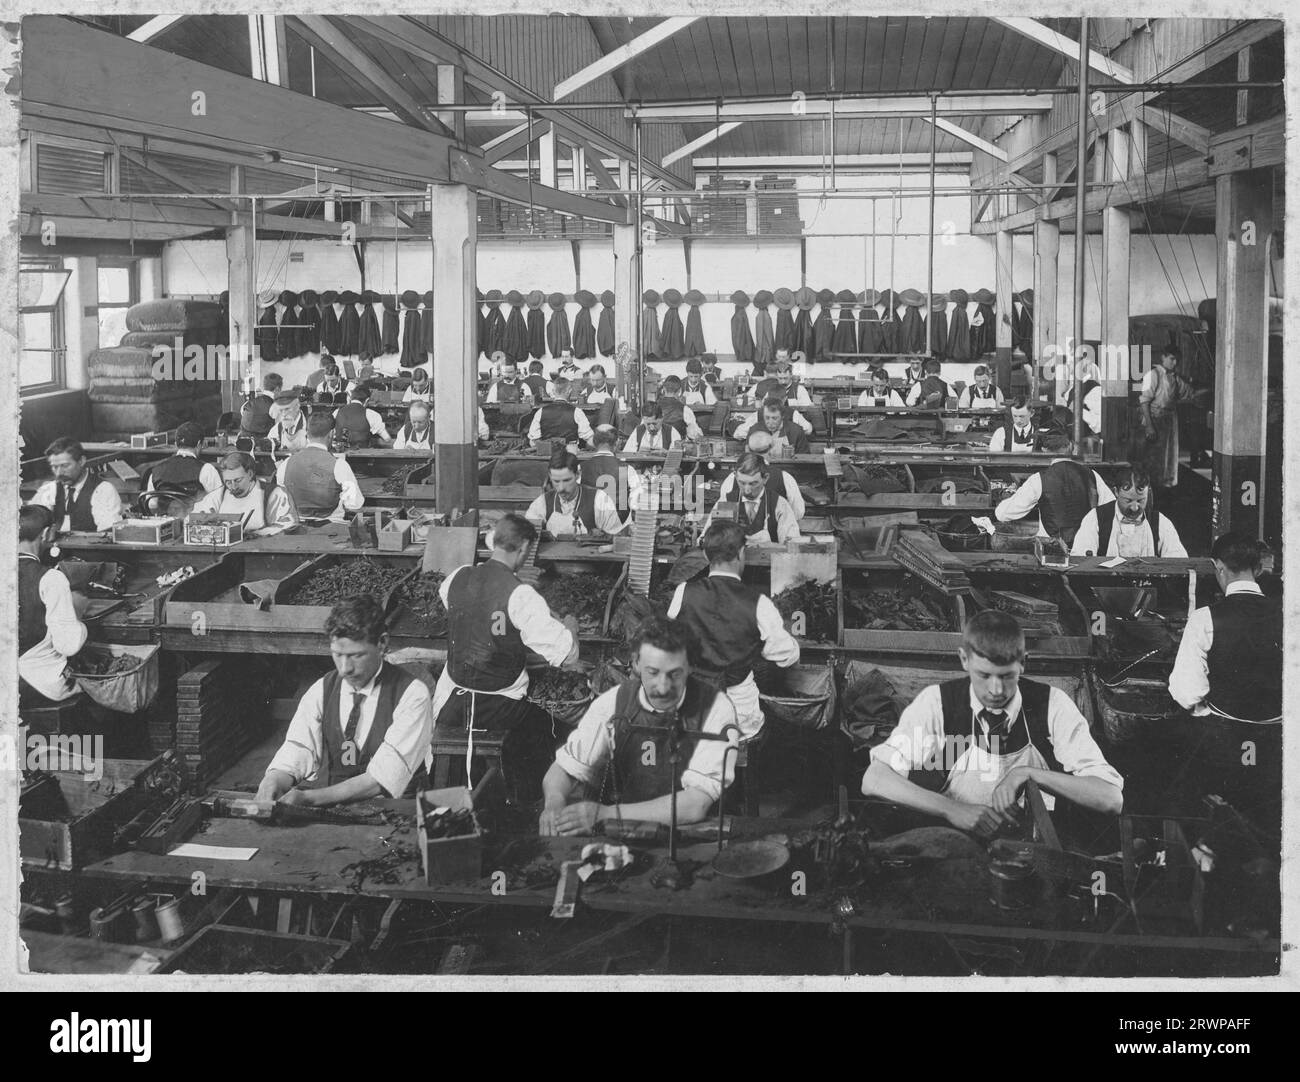 Die Zigarrenfabrik in der State Tobacco Company, A'Beckett Street, Melbourne. Erhöhte Ansicht des Innenraums mit Reihen von Bänken, Männern in Hemden und Schürzen, die Zigarren herstellen, Zigarrenbündel auf der Bank vor ihnen und auf dem Tisch unten links. Junge Auszubildende in einigen Bereichen sichtbar. Handrollen. Reihe von Mänteln und Hüten, die an der Rückwand sichtbar sind. Bild von 1900 bis 1920 Stockfoto